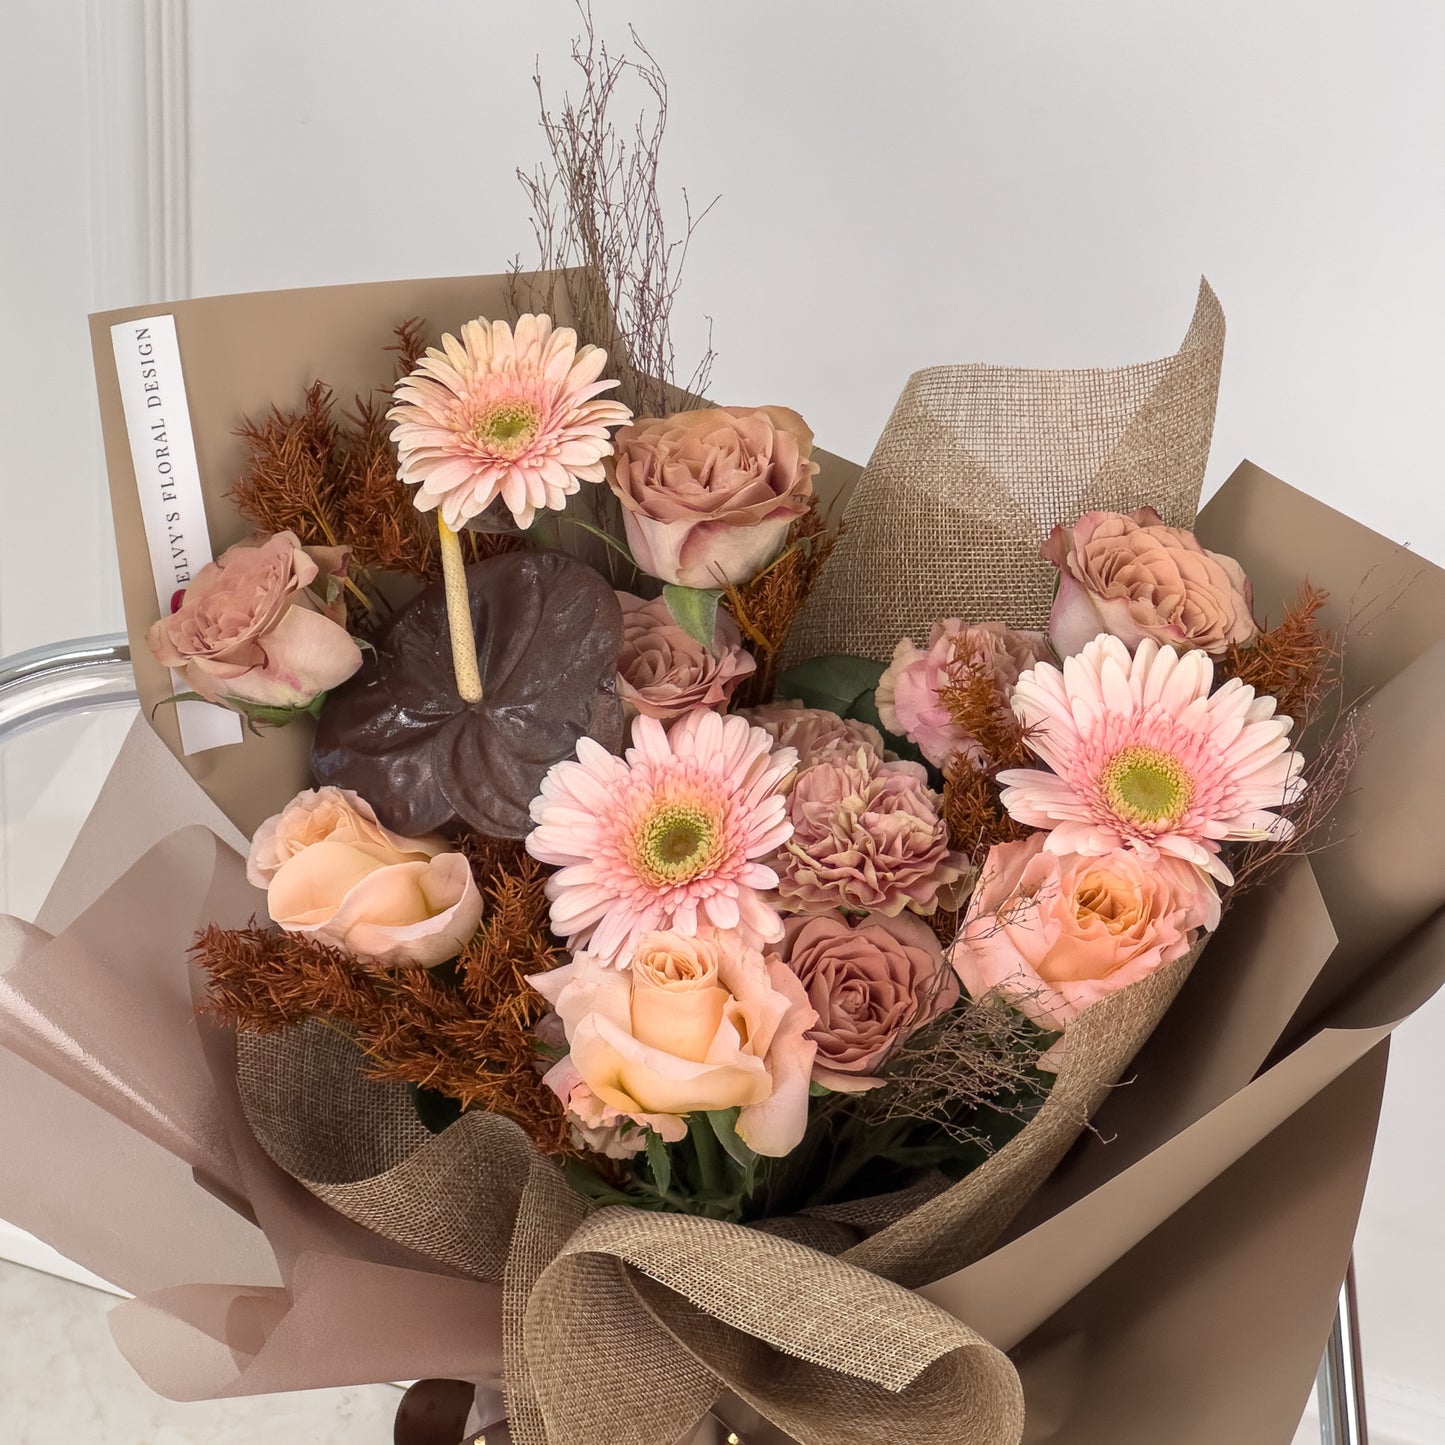 Lovely Bouquet Features | Elvy's Floral Design